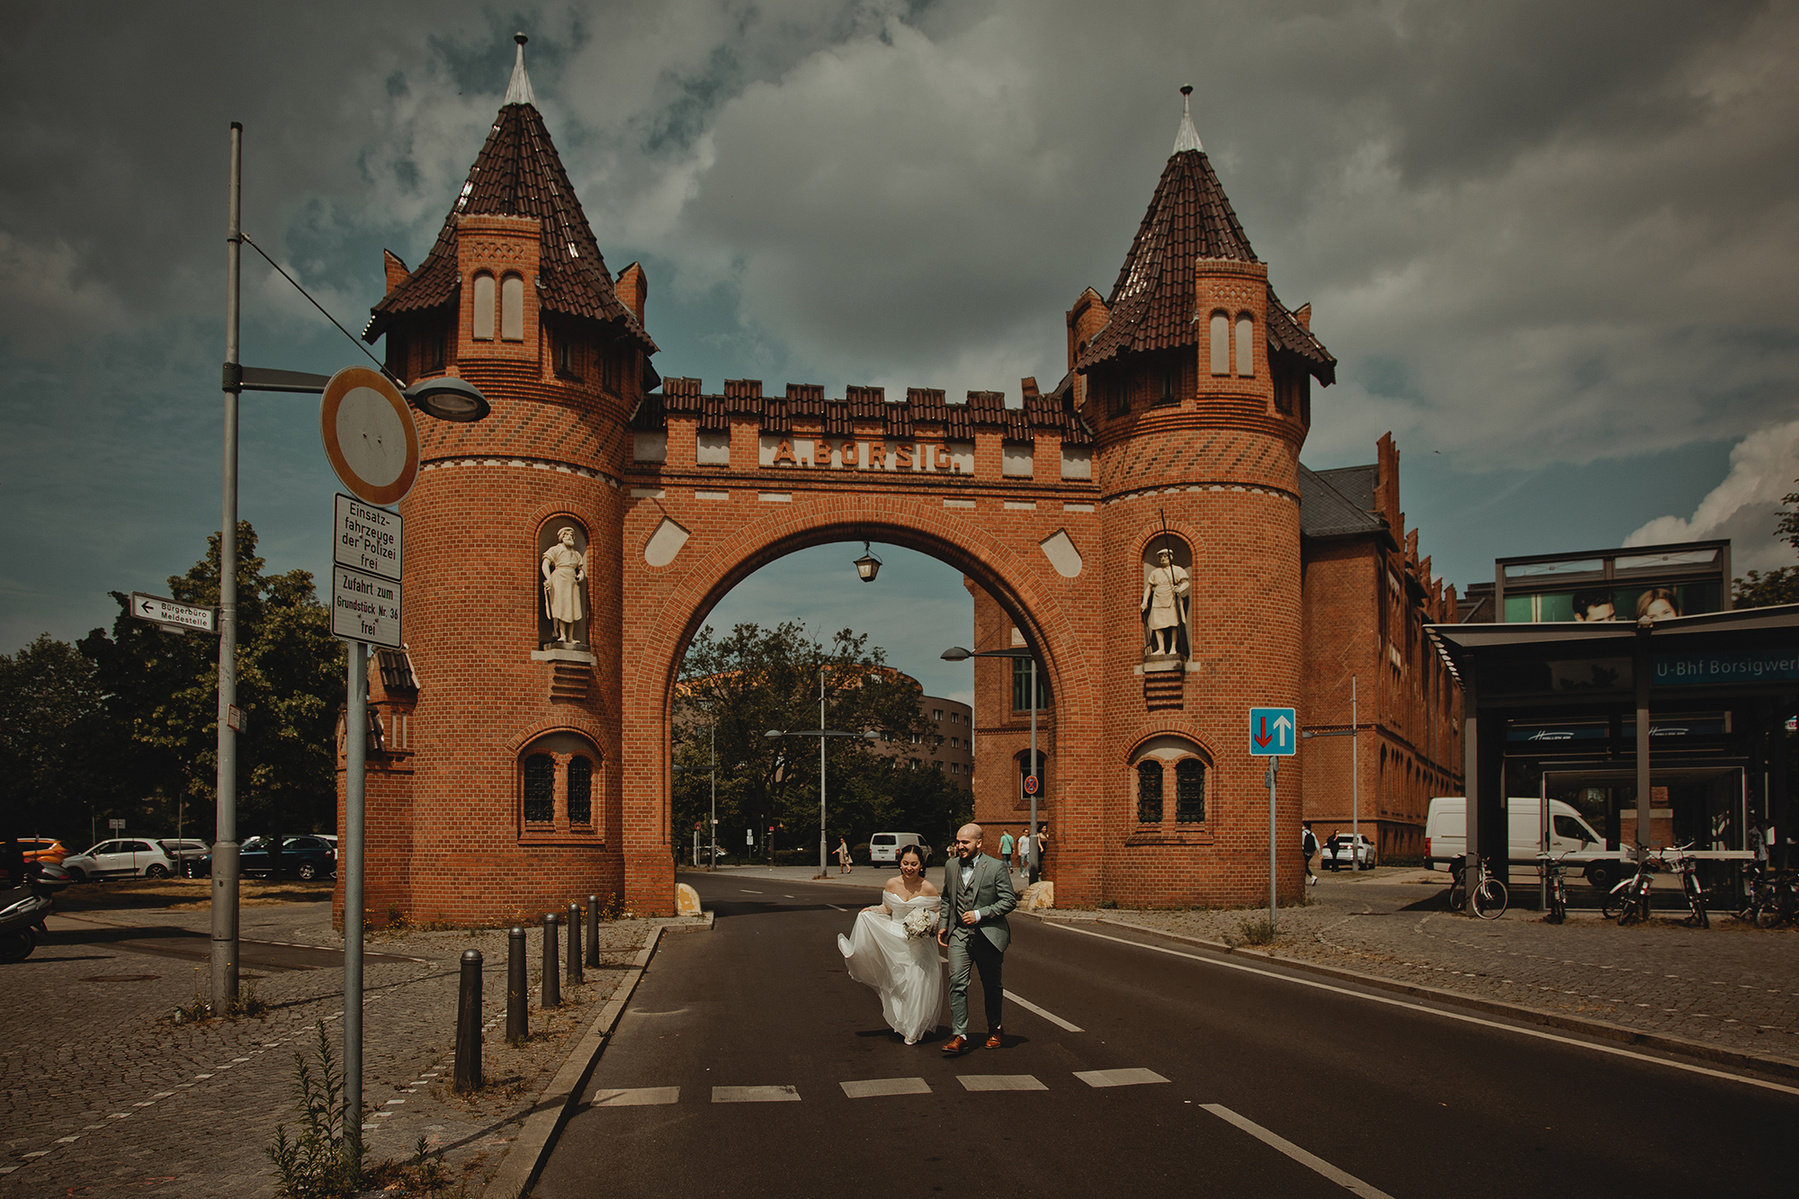 Vor dem historischen Borsigtor in Berlin-Tegel rennt ein Brautpaar für ungestellte Hochzeitsfotos über die Straße.